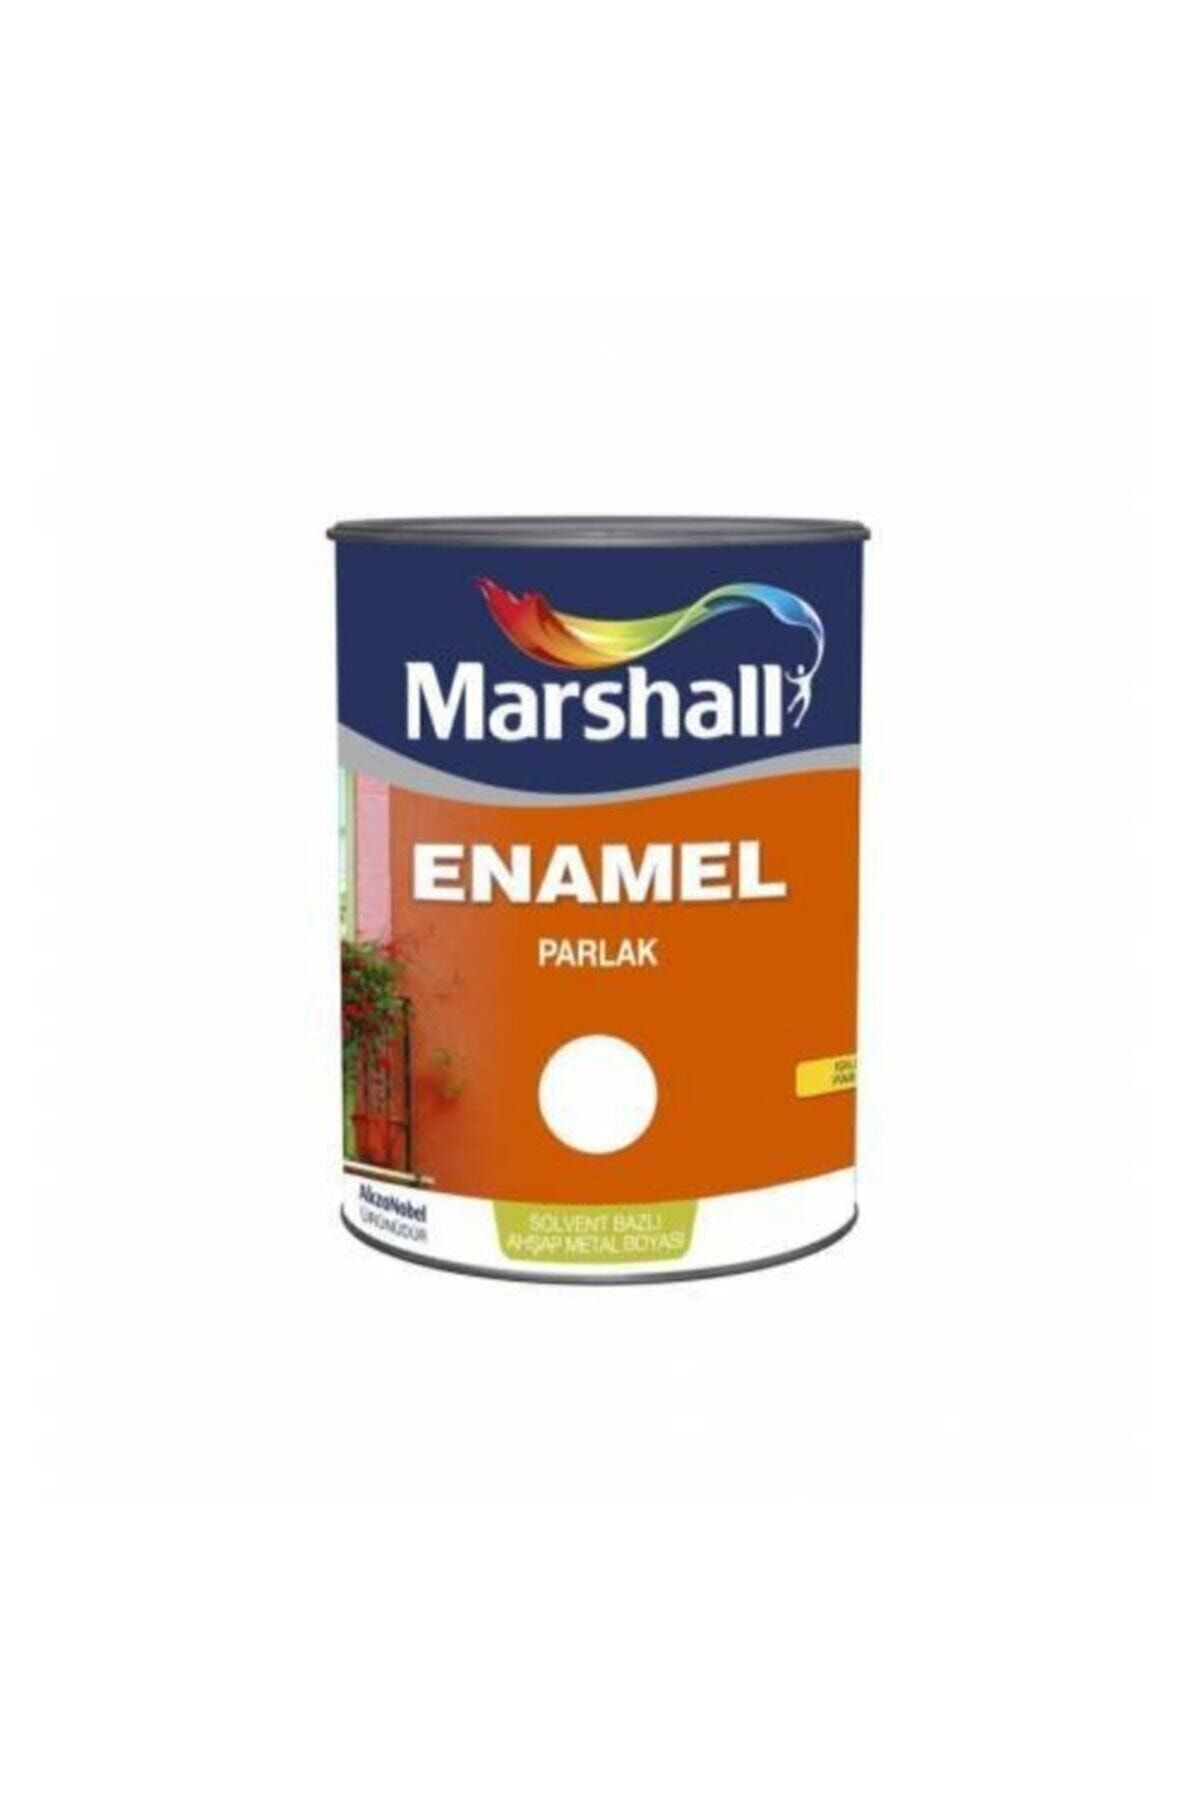 Marshall Marshal Enamel Parlak Solvent Bazlı Ahşap Metal Boyası 0.75l